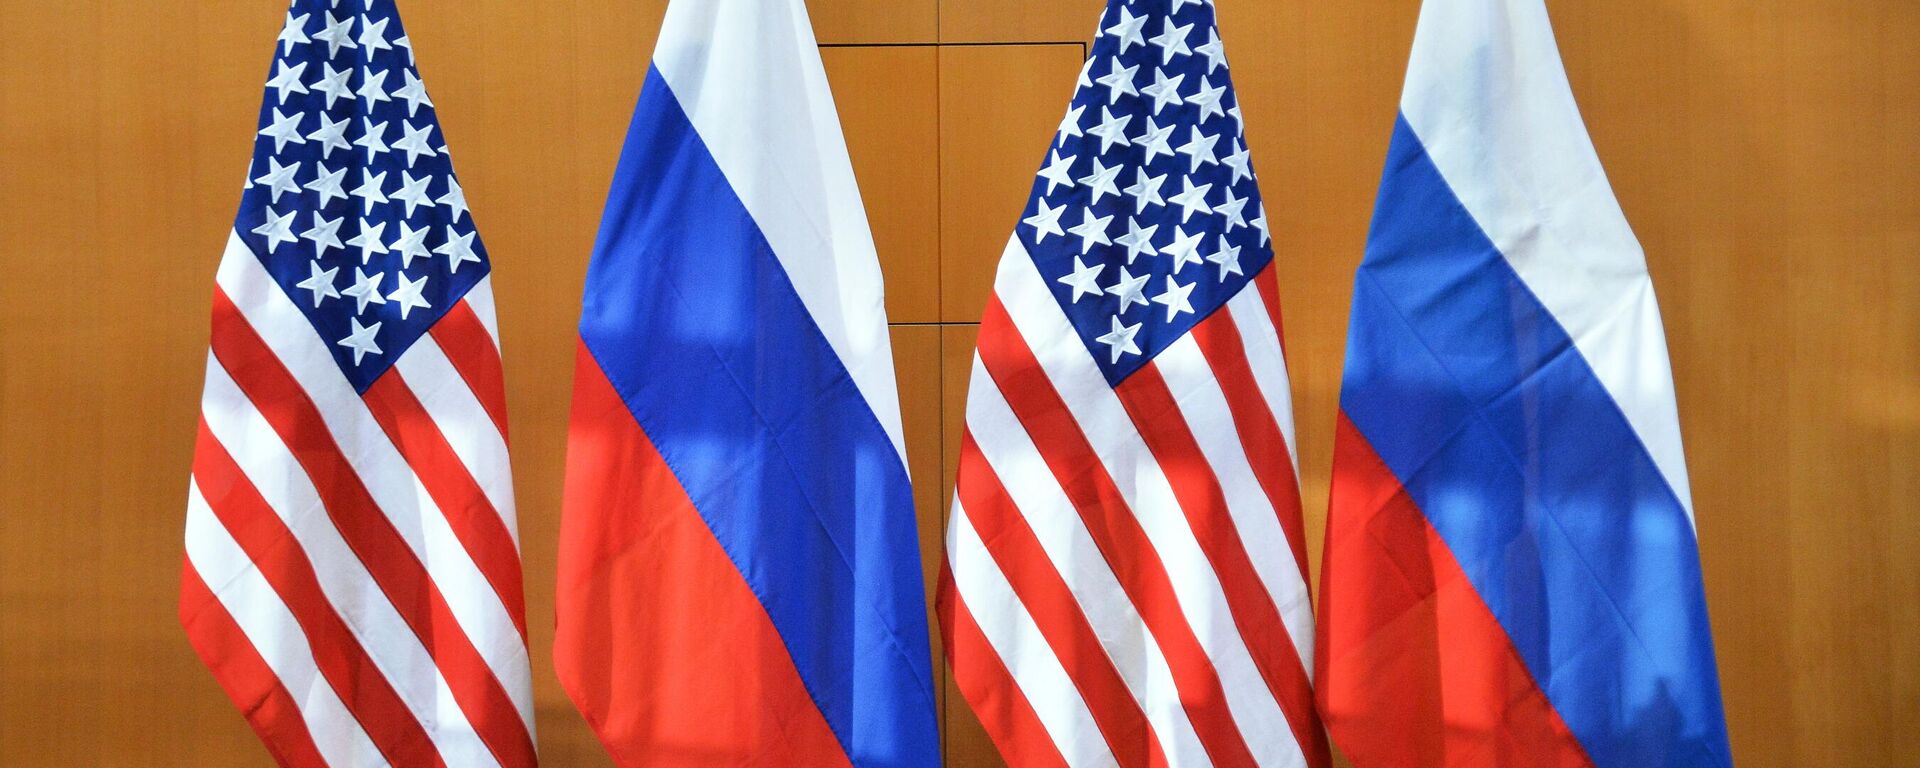 Em Genebra, na Suíça, as bandeiras dos EUA e da Rússia aparecem alinhadas durante encontro de representantes dos dois países em 10 de janeiro de 2022 - Sputnik Brasil, 1920, 25.01.2022